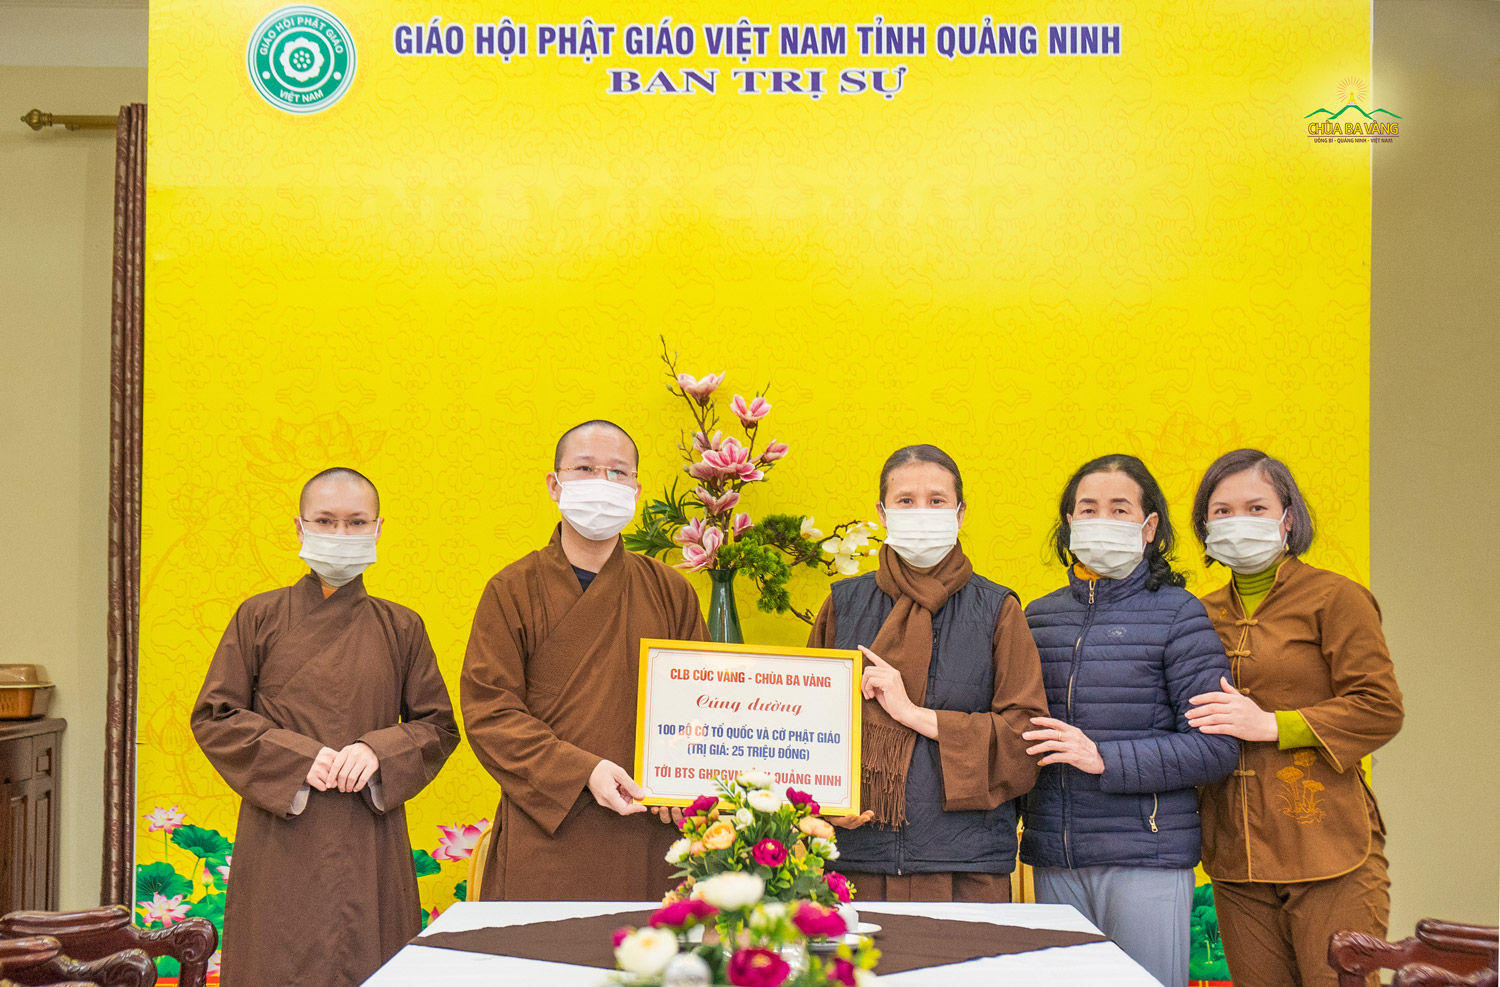 CLB Cúc Vàng chùa Ba Vàng cúng dường 100 bộ cờ Tổ quốc và cờ Phật giáo tới BTS GHPG tỉnh Quảng Ninh